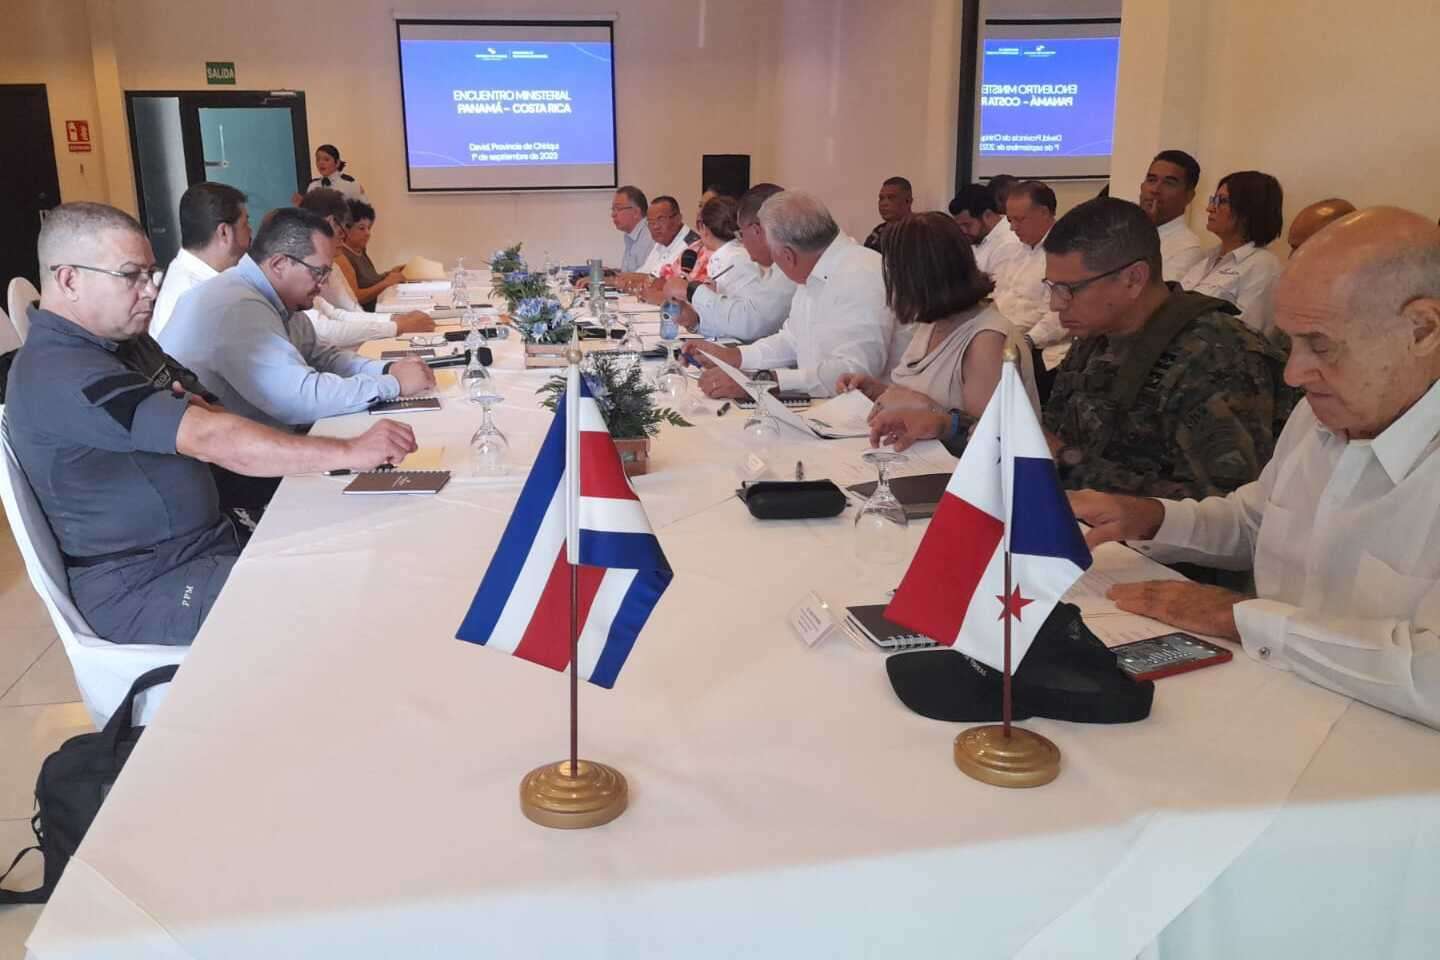 Reunión entre autoridades de Panamá y Costa Rica.